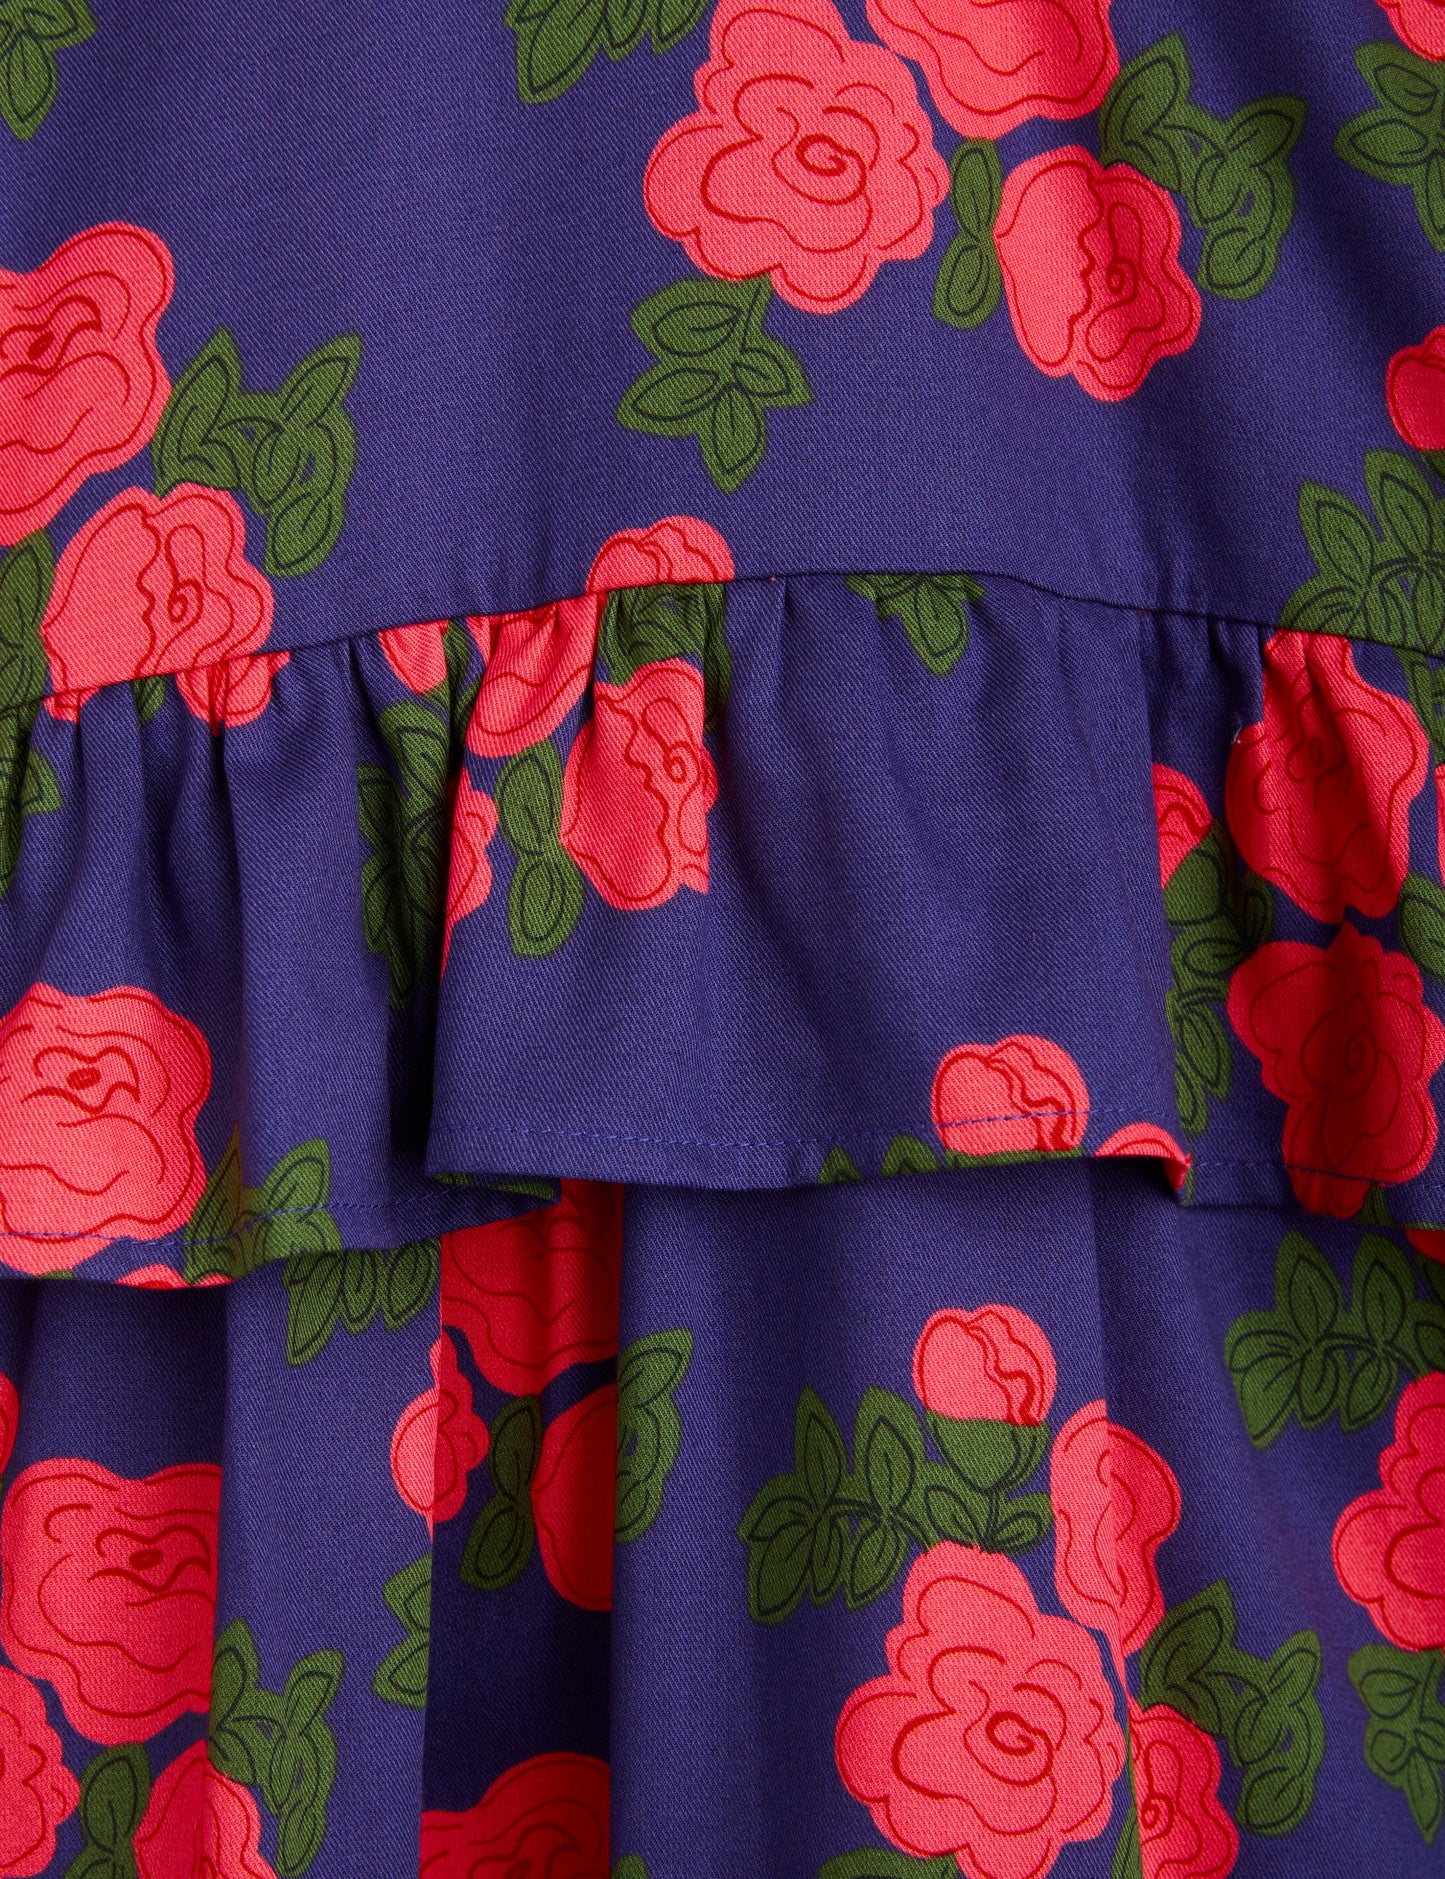 Mini Rodini Roses Woven Dress - Blue